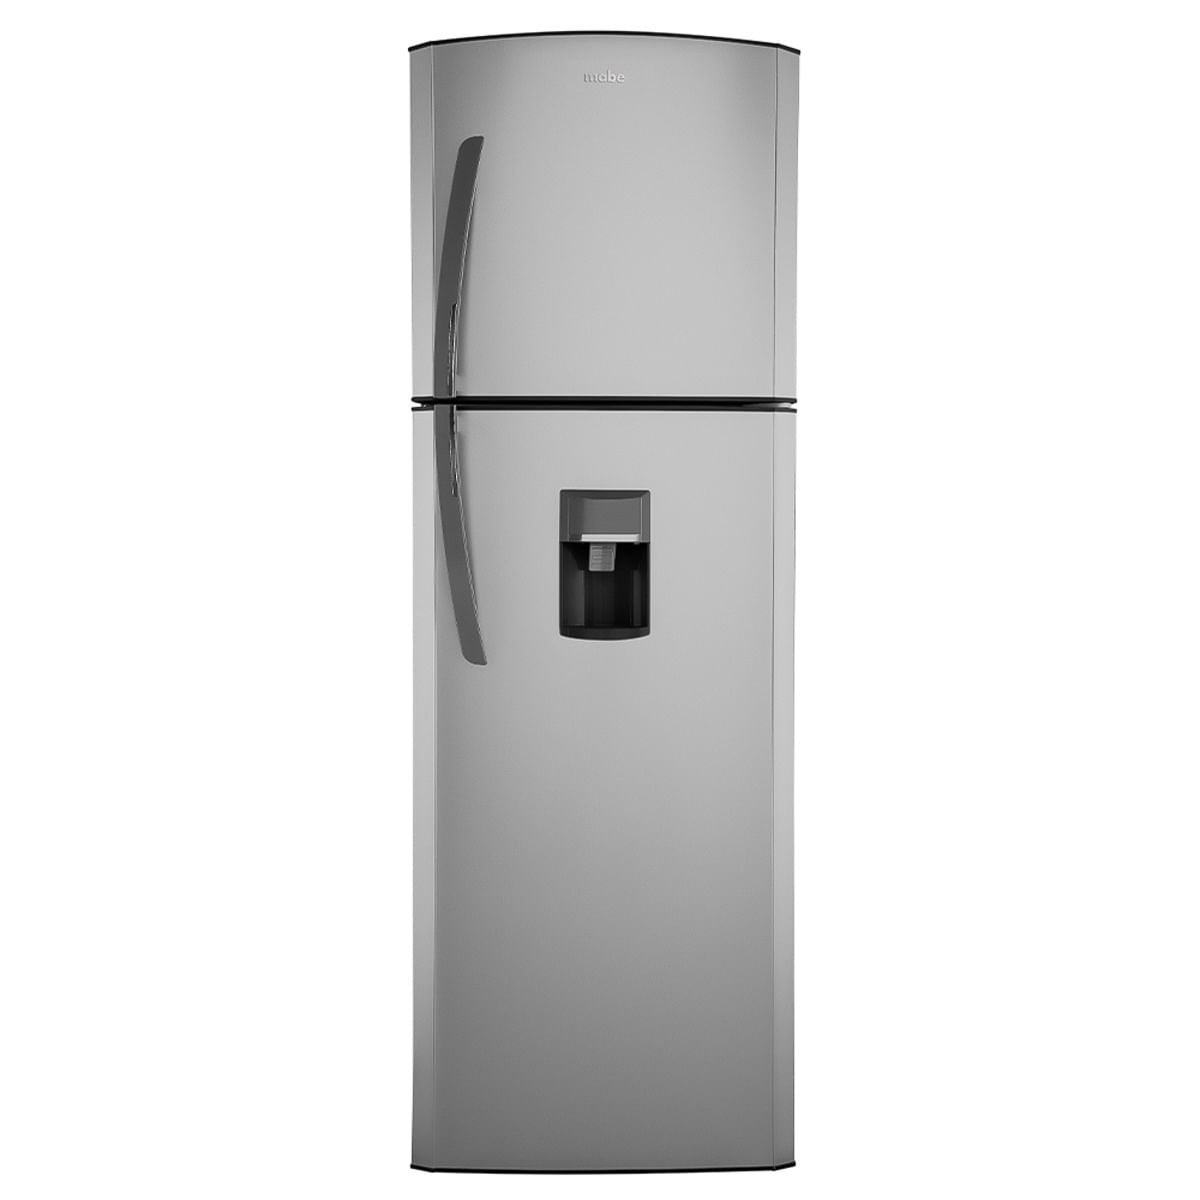 Refrigerador Mabe De 250 Litros 10 Pies Con Despachador - RMA250FYMRQ0